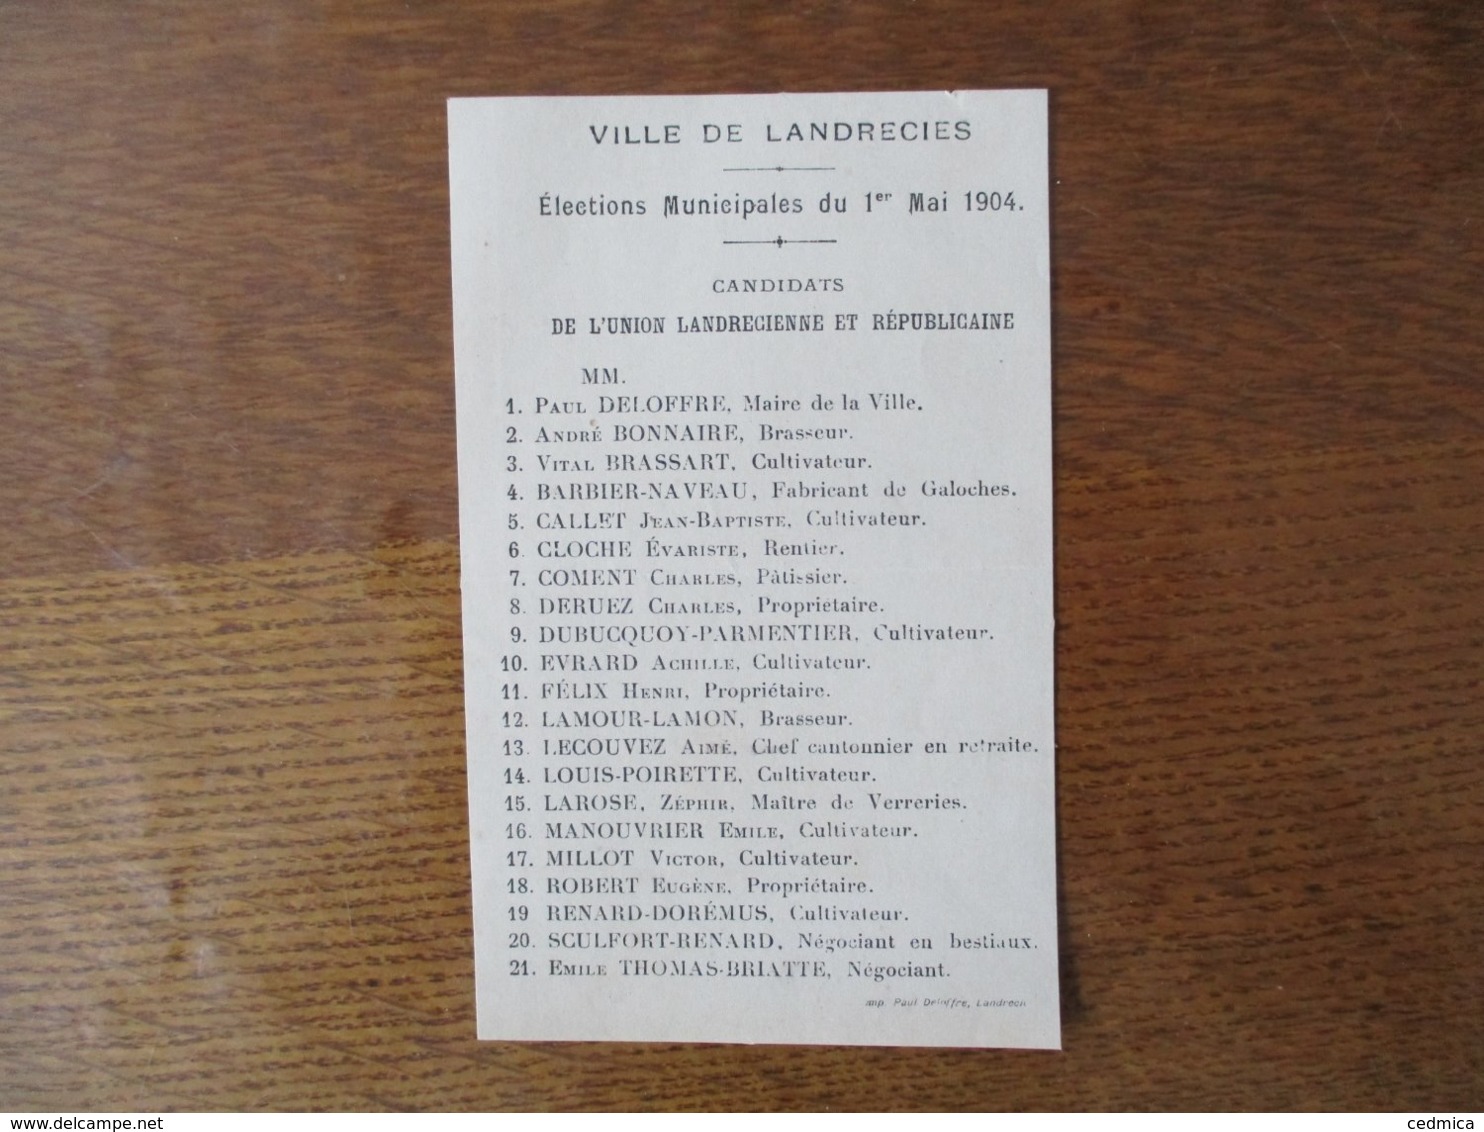 LANDRECIES ELECTIONS MUNICIPALES DU 1er MAI 1904 CANDIDATS DE L'UNION LANDRECIENNE ET REPUBLICAINE - Historische Dokumente